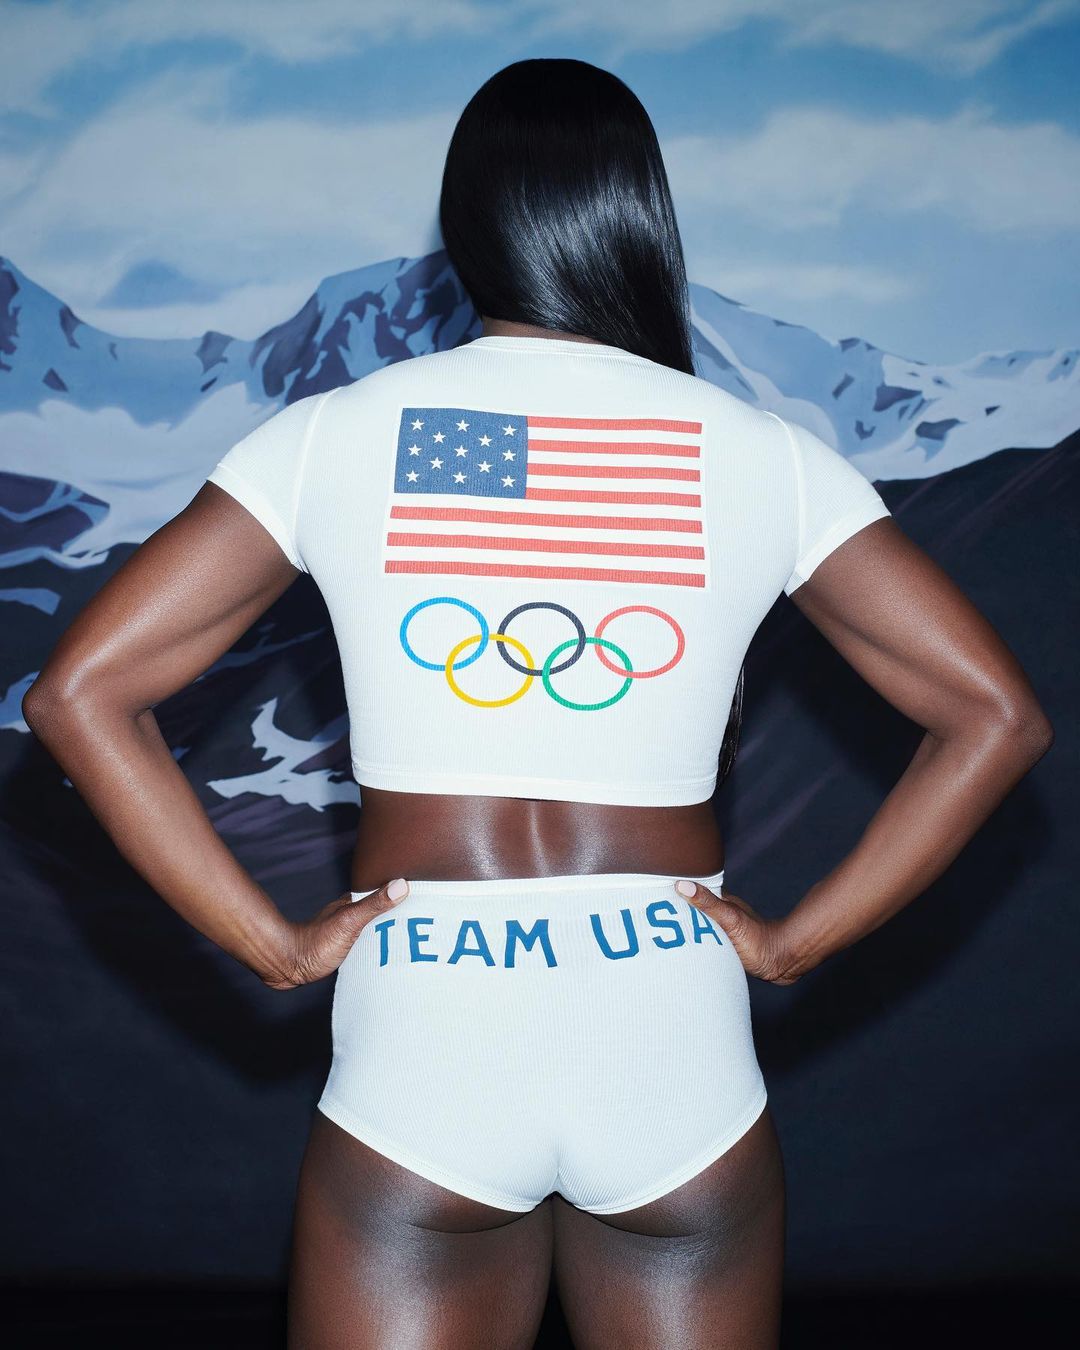 Бренд Ким Кардашьян Skims выпустил новую коллаборацию с олимпийской сборной США (фото 8)